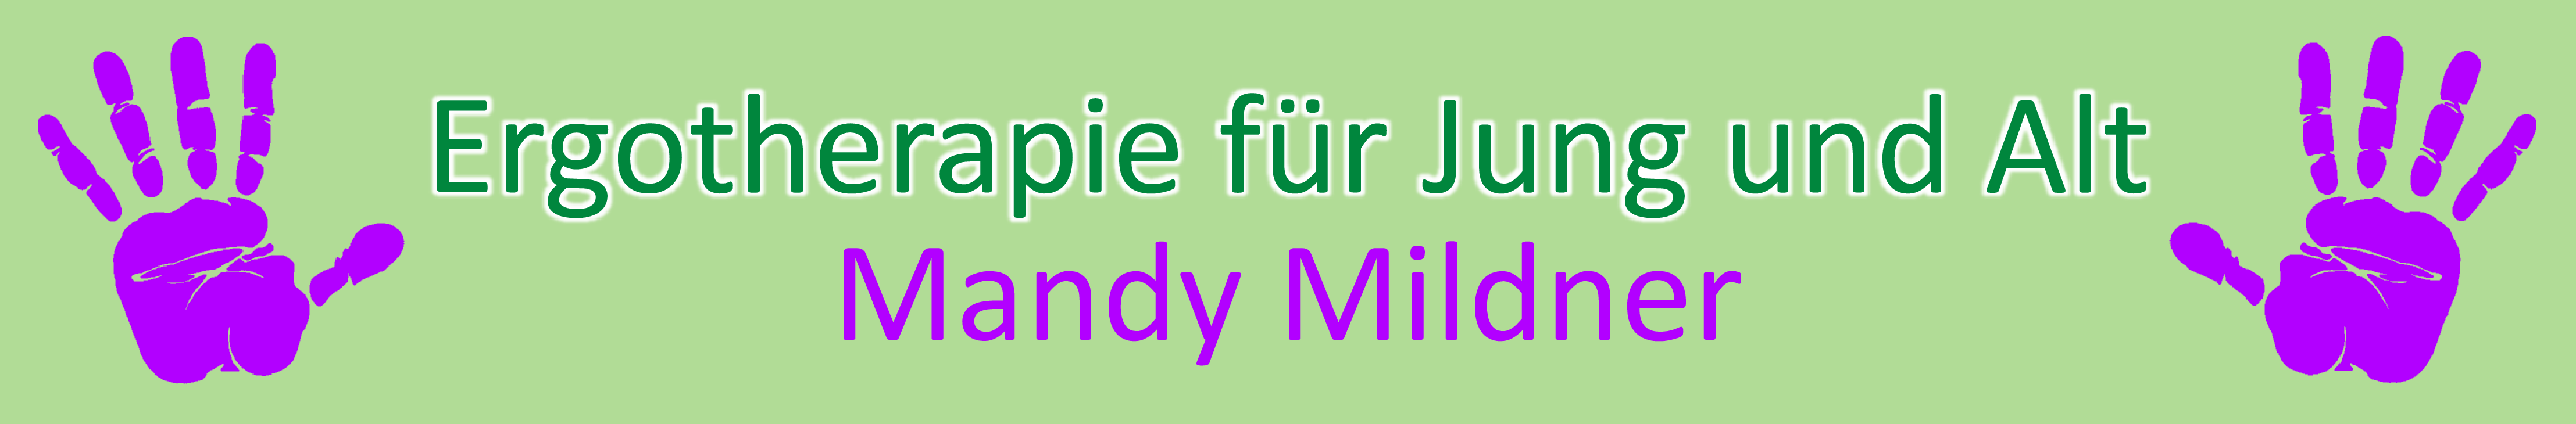 Ergotherapie für Jung und Alt - Ergotherapie Mandy Mildner, Bautzen